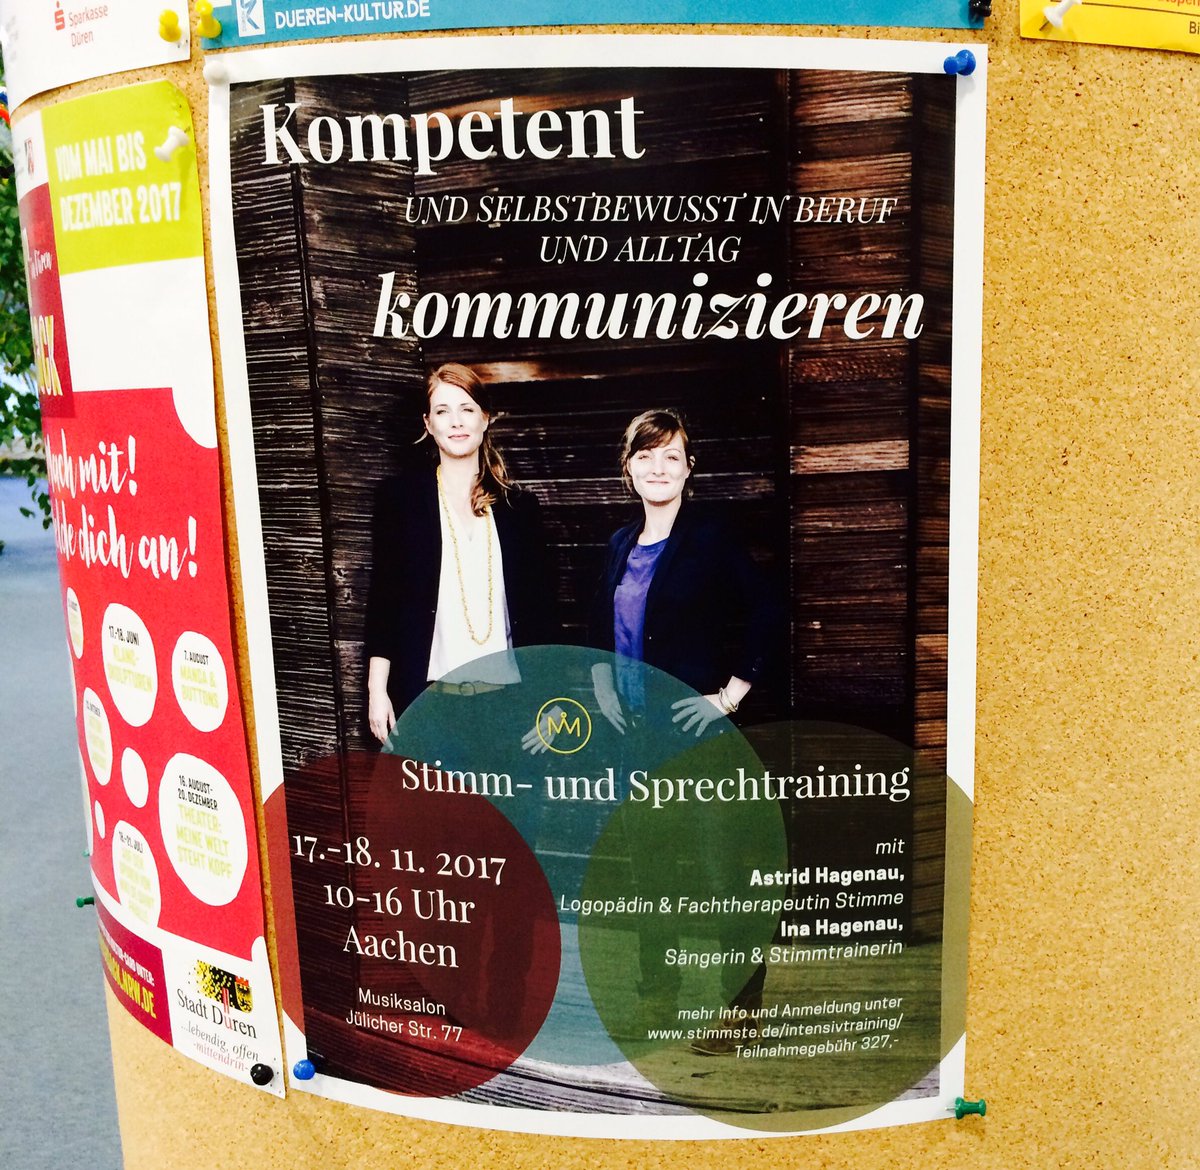 Grüße aus #Düren & #Aachen! Plakate für das Seminar in 2 Wochen hängen. Freuen uns über Deine Anmeldung :) #freeyourvoice #nutzedeinestimme